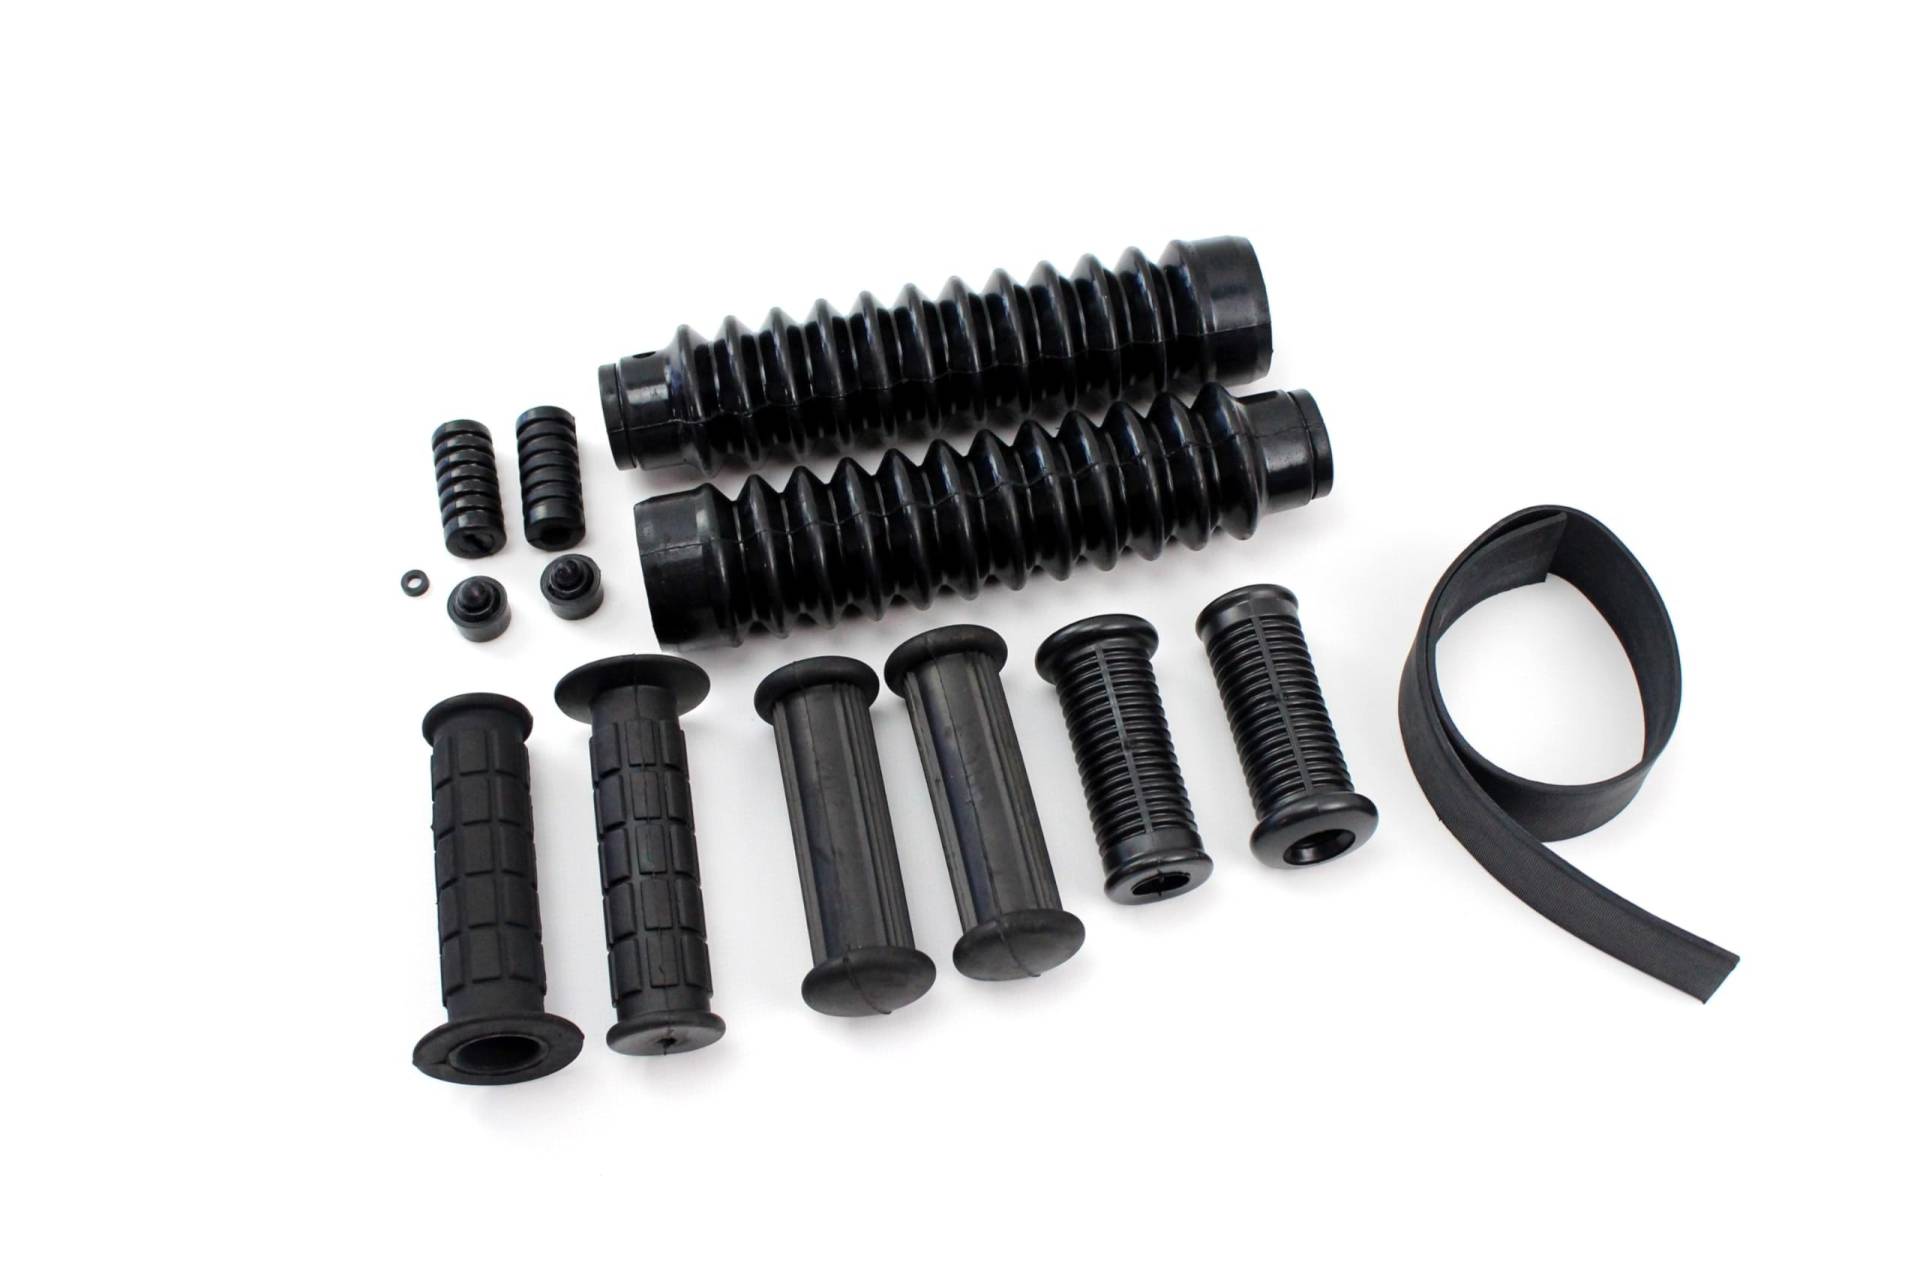 14 teiliges Gummiteile Set (DDR Form) schwarz für Rahmen, Schaltung, Kickstarter, Lenker, Gabel für Simson S51 S50 S70 von BISOMO